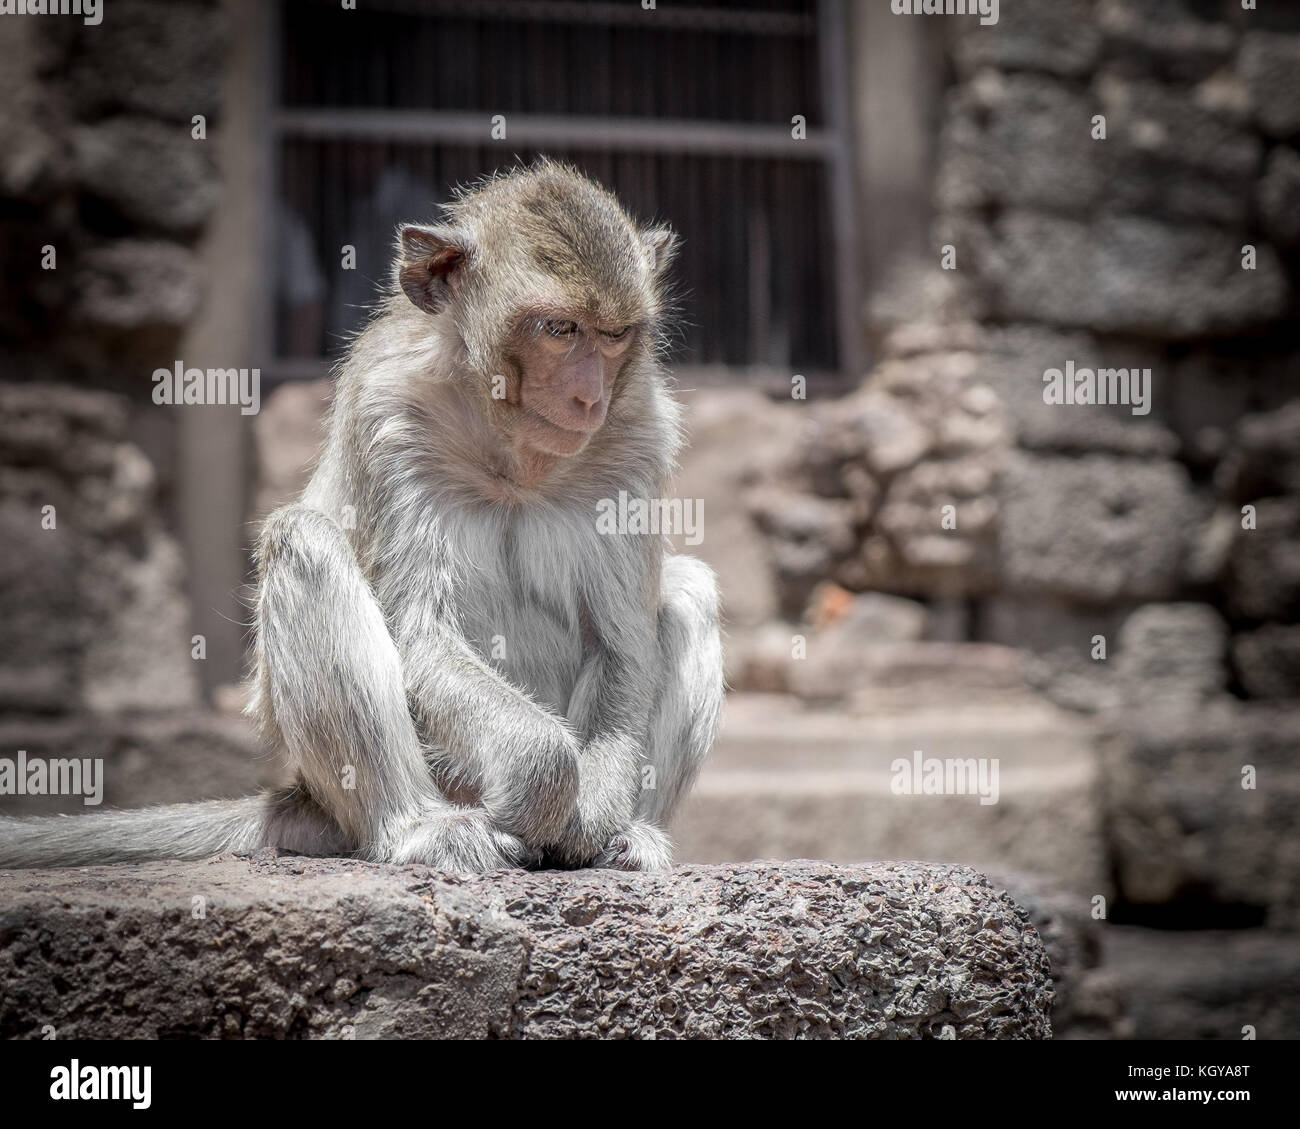 Ein Macaque in tiefes Denken an einem alten Standort in Thailand Stockfoto